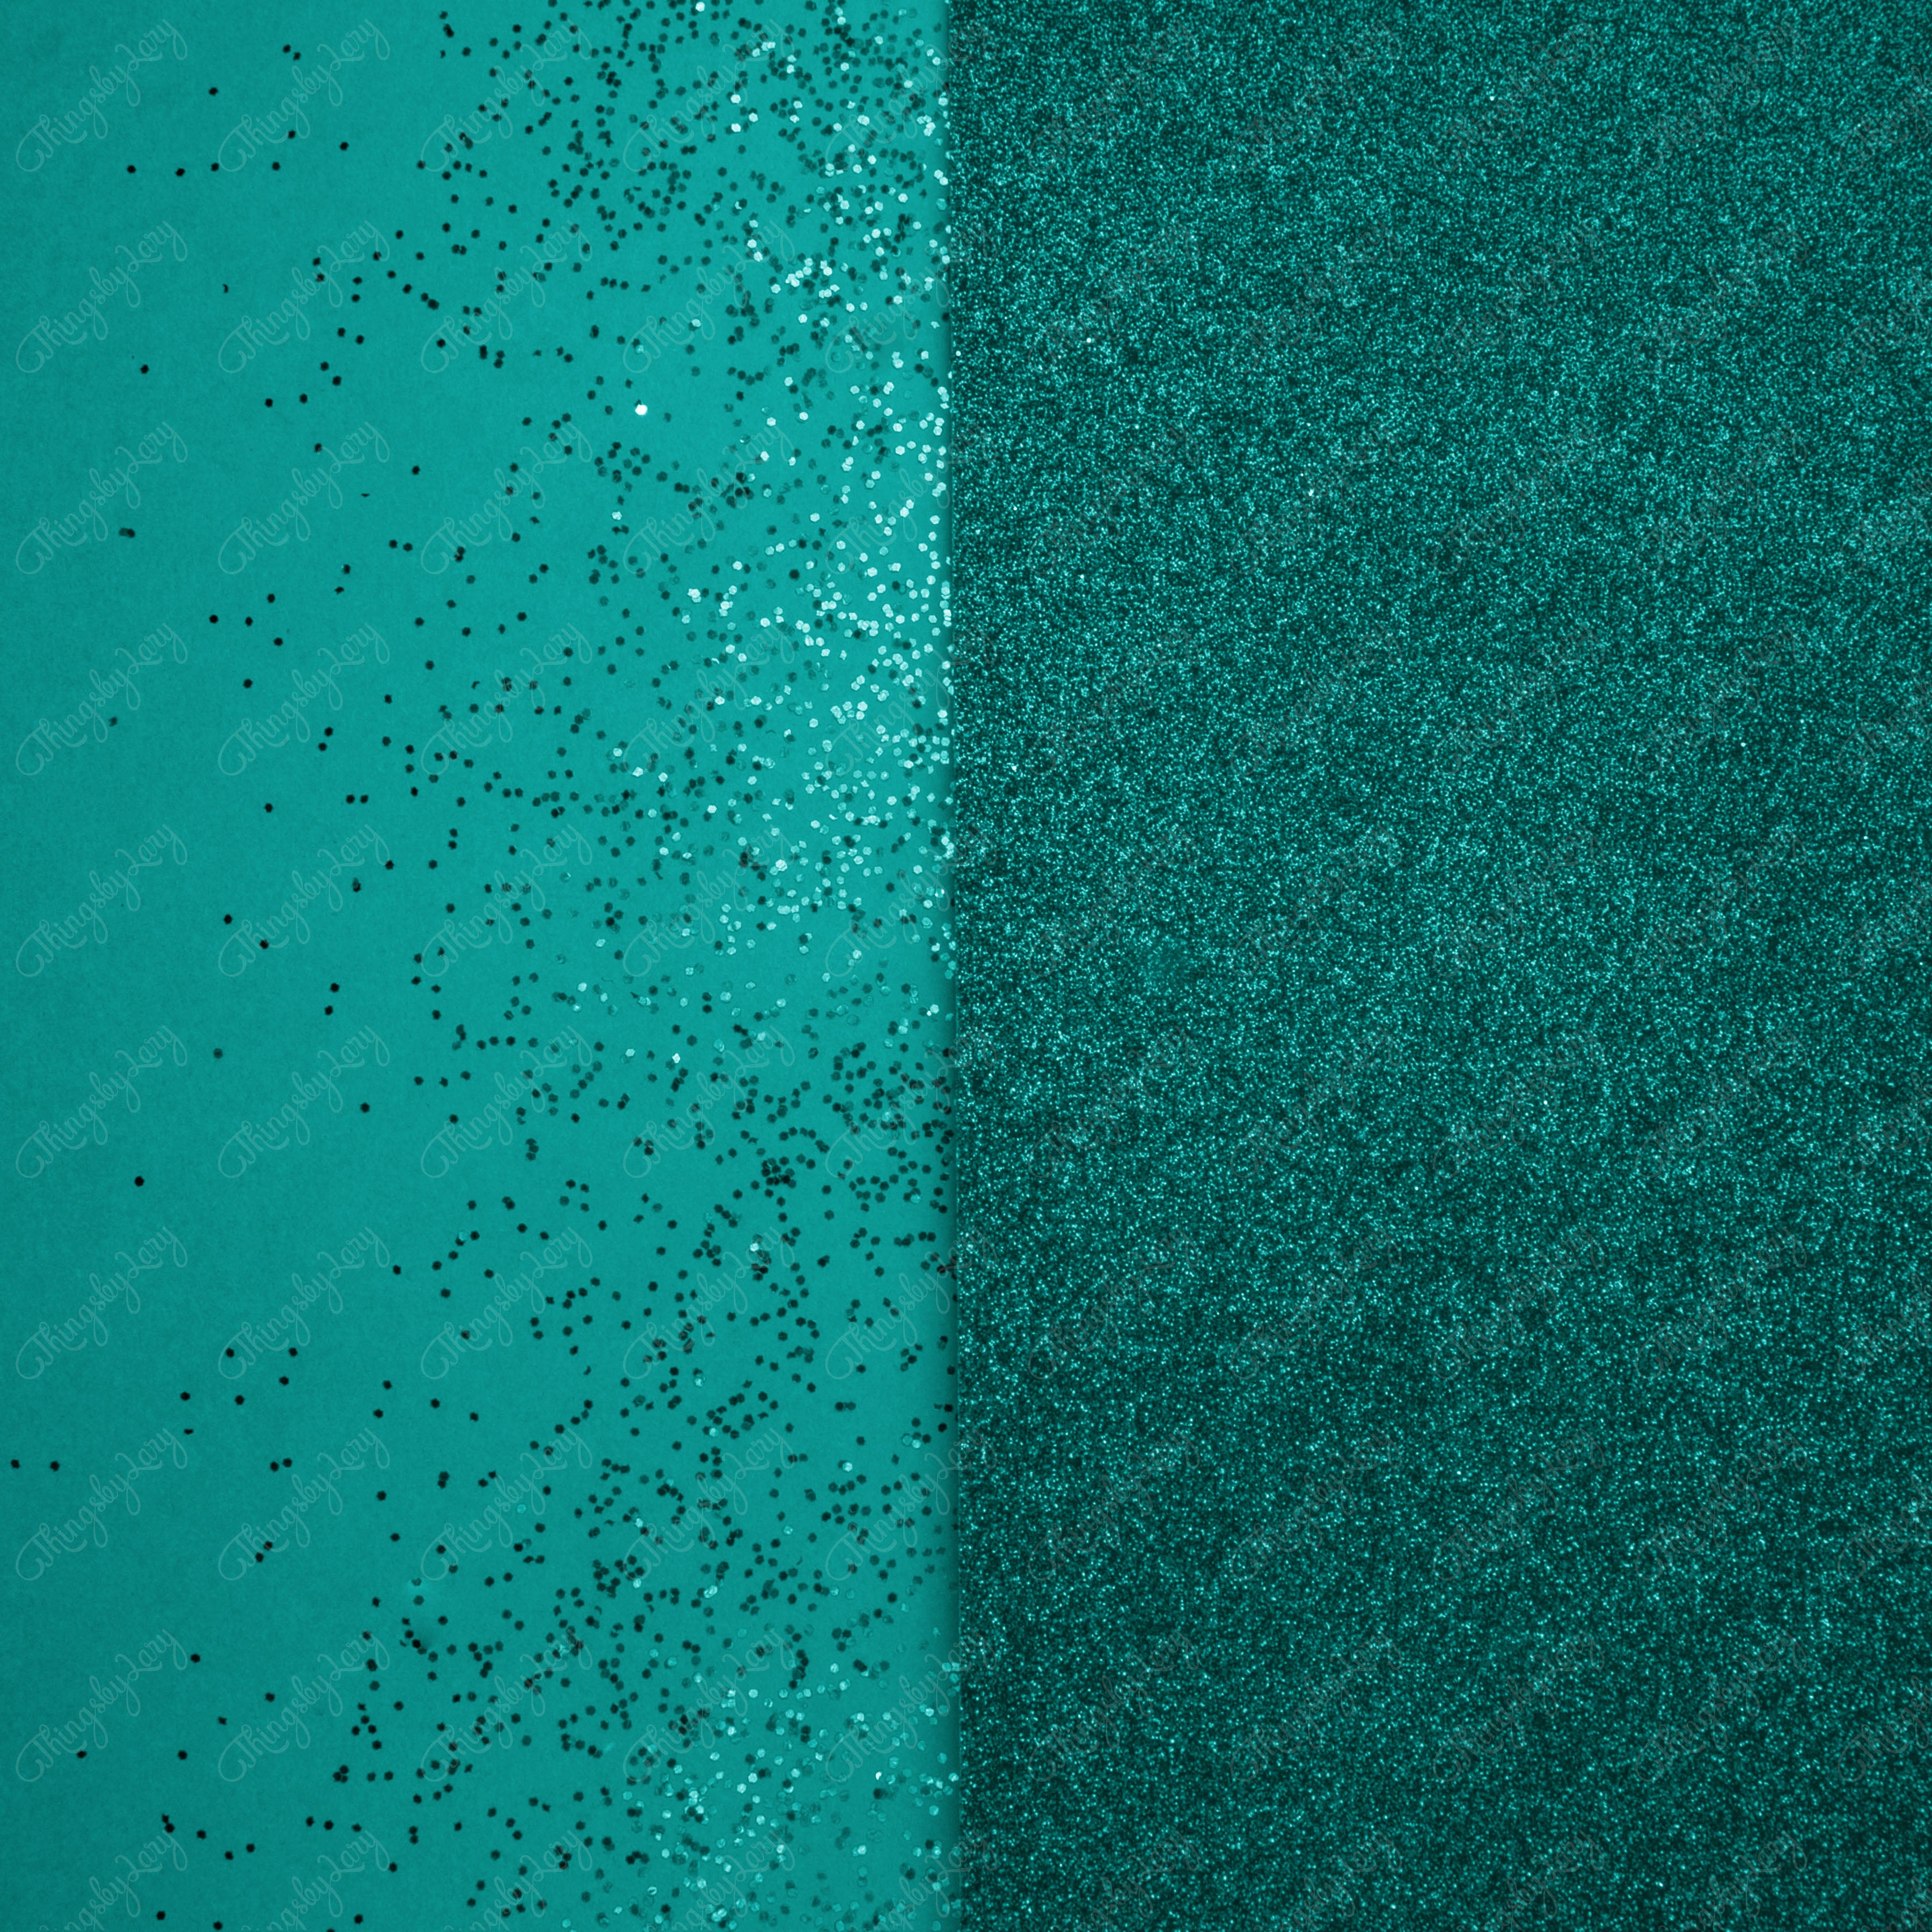 100 Half Split Glitter Background Digital Images